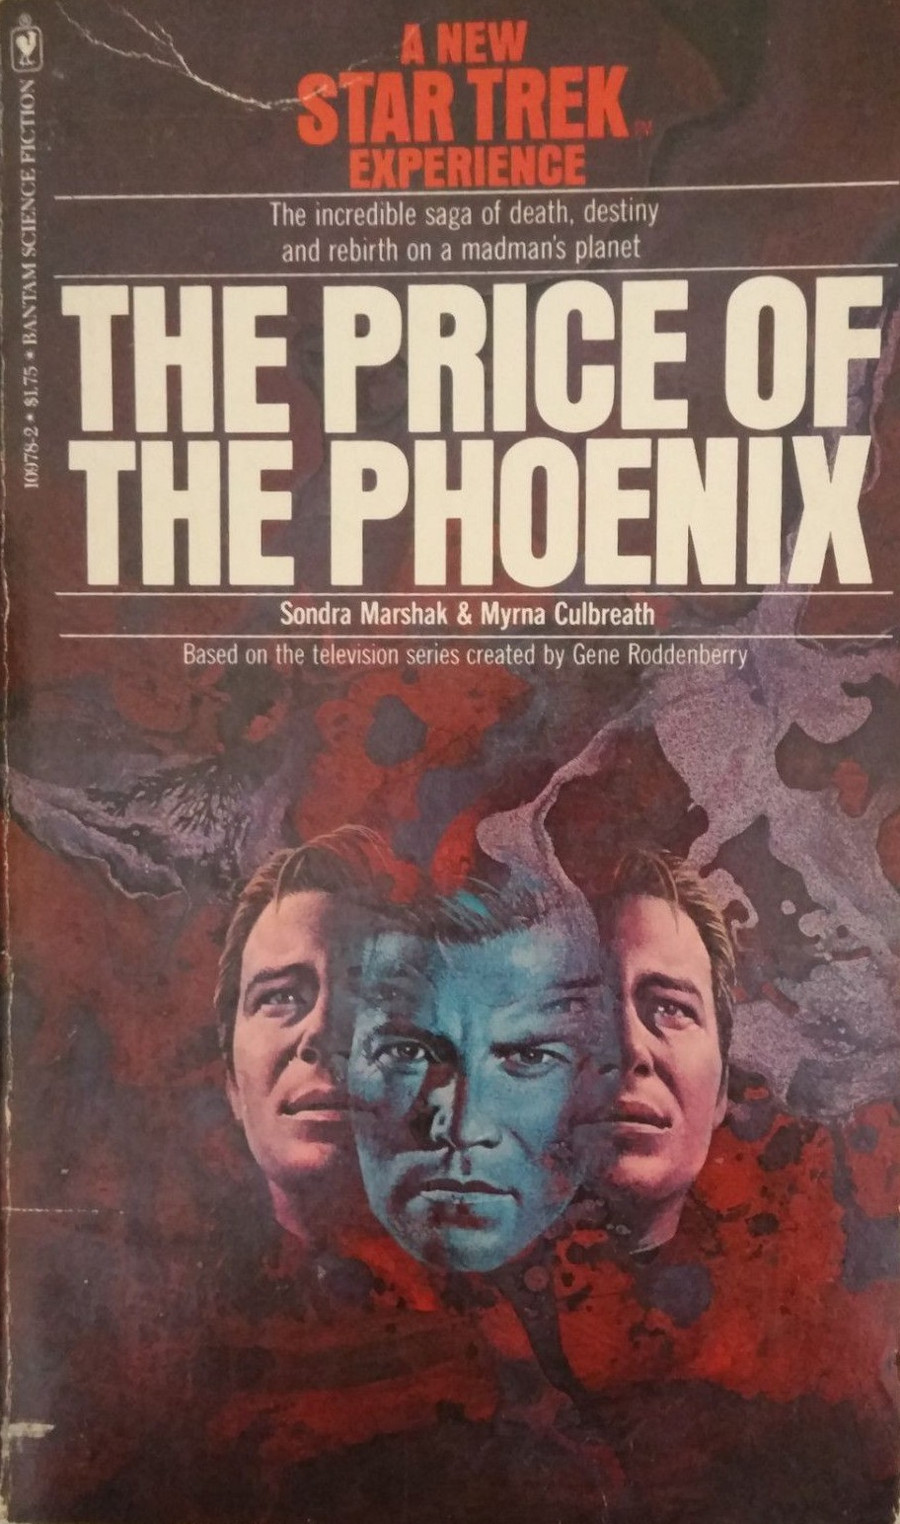 The Price of the Phoenix